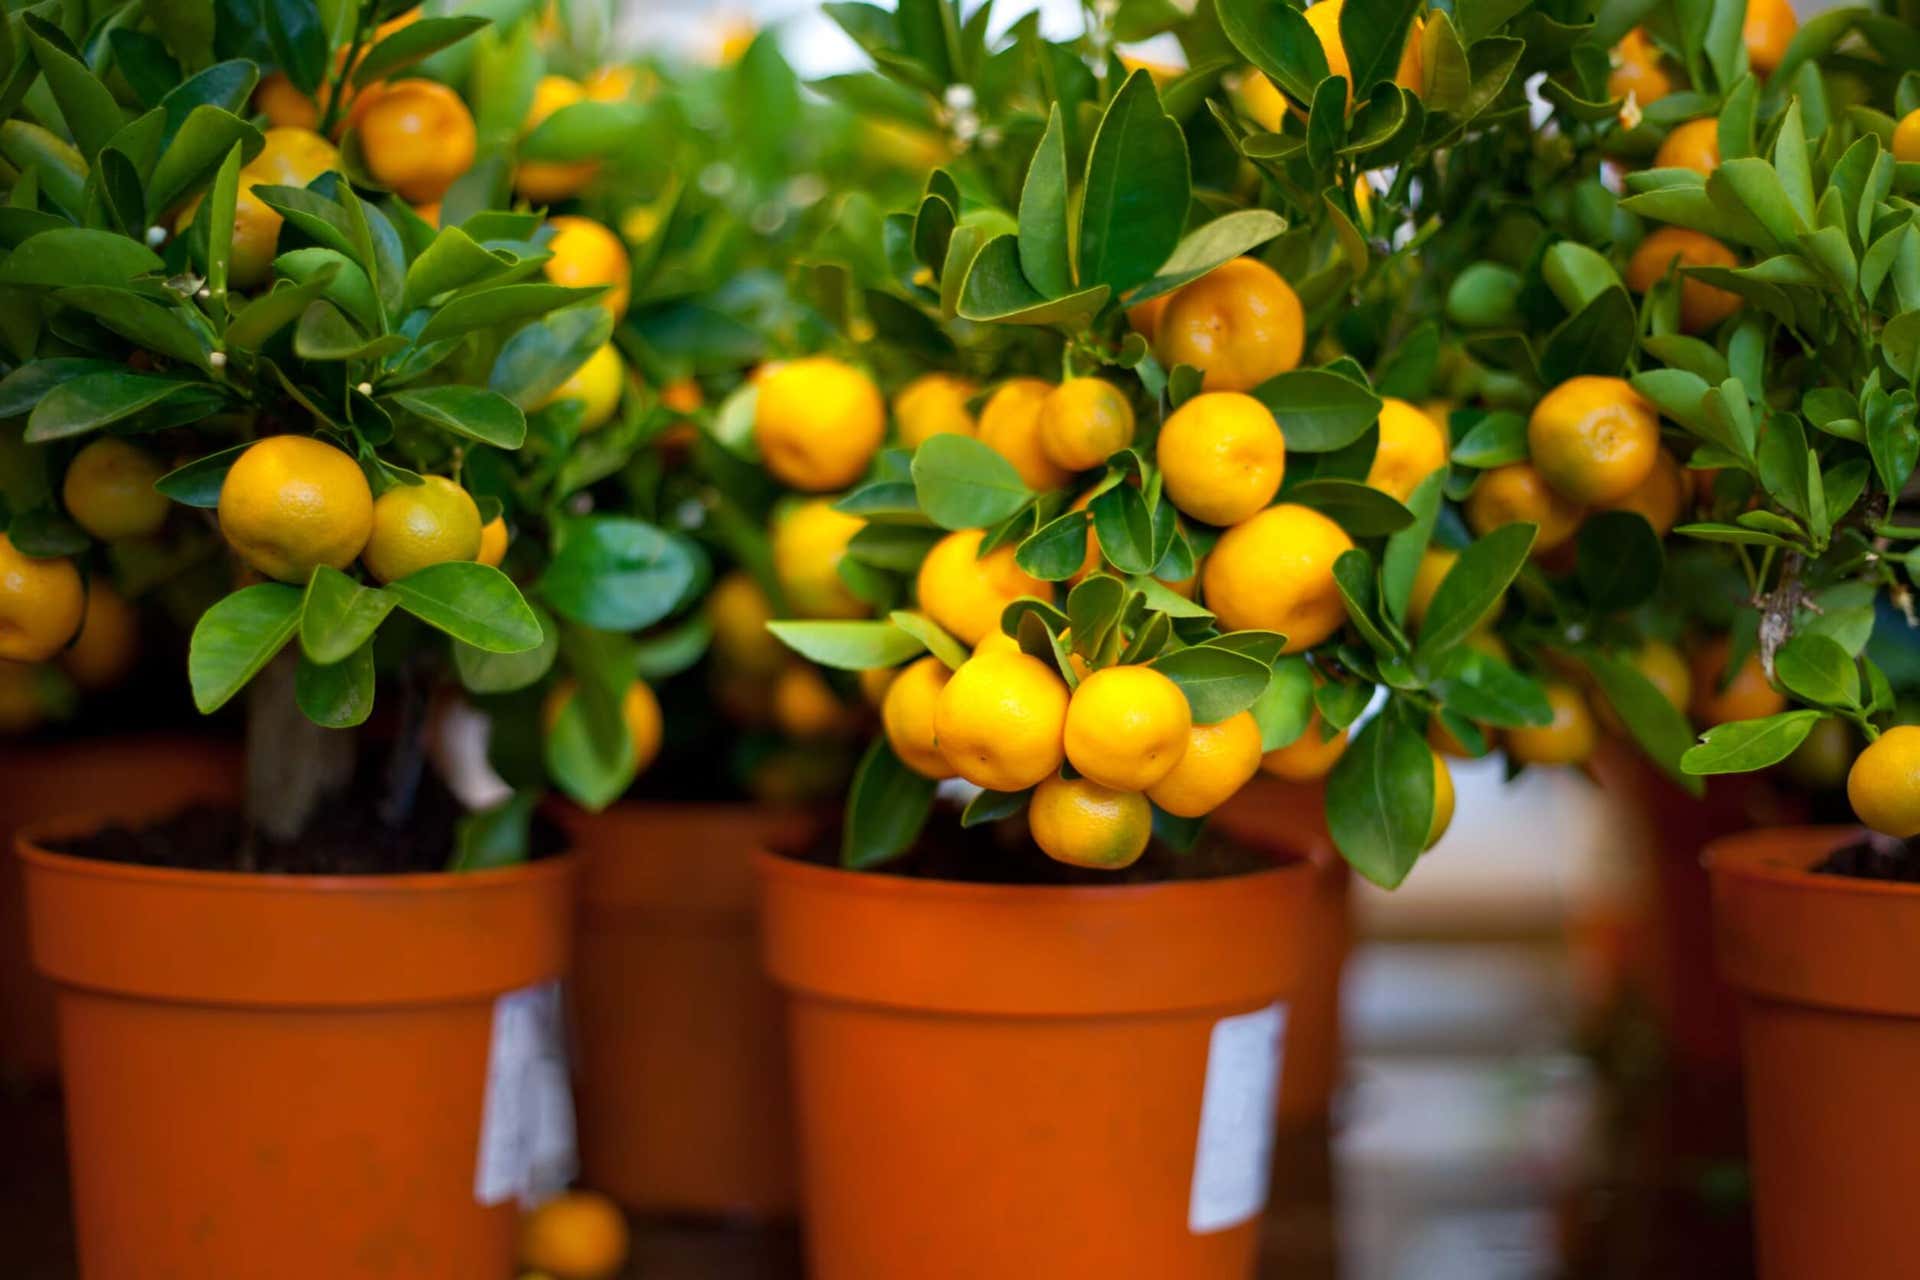 Los limoneros no solo refrescan el aire, también añaden un aroma cítrico muy sabroso.